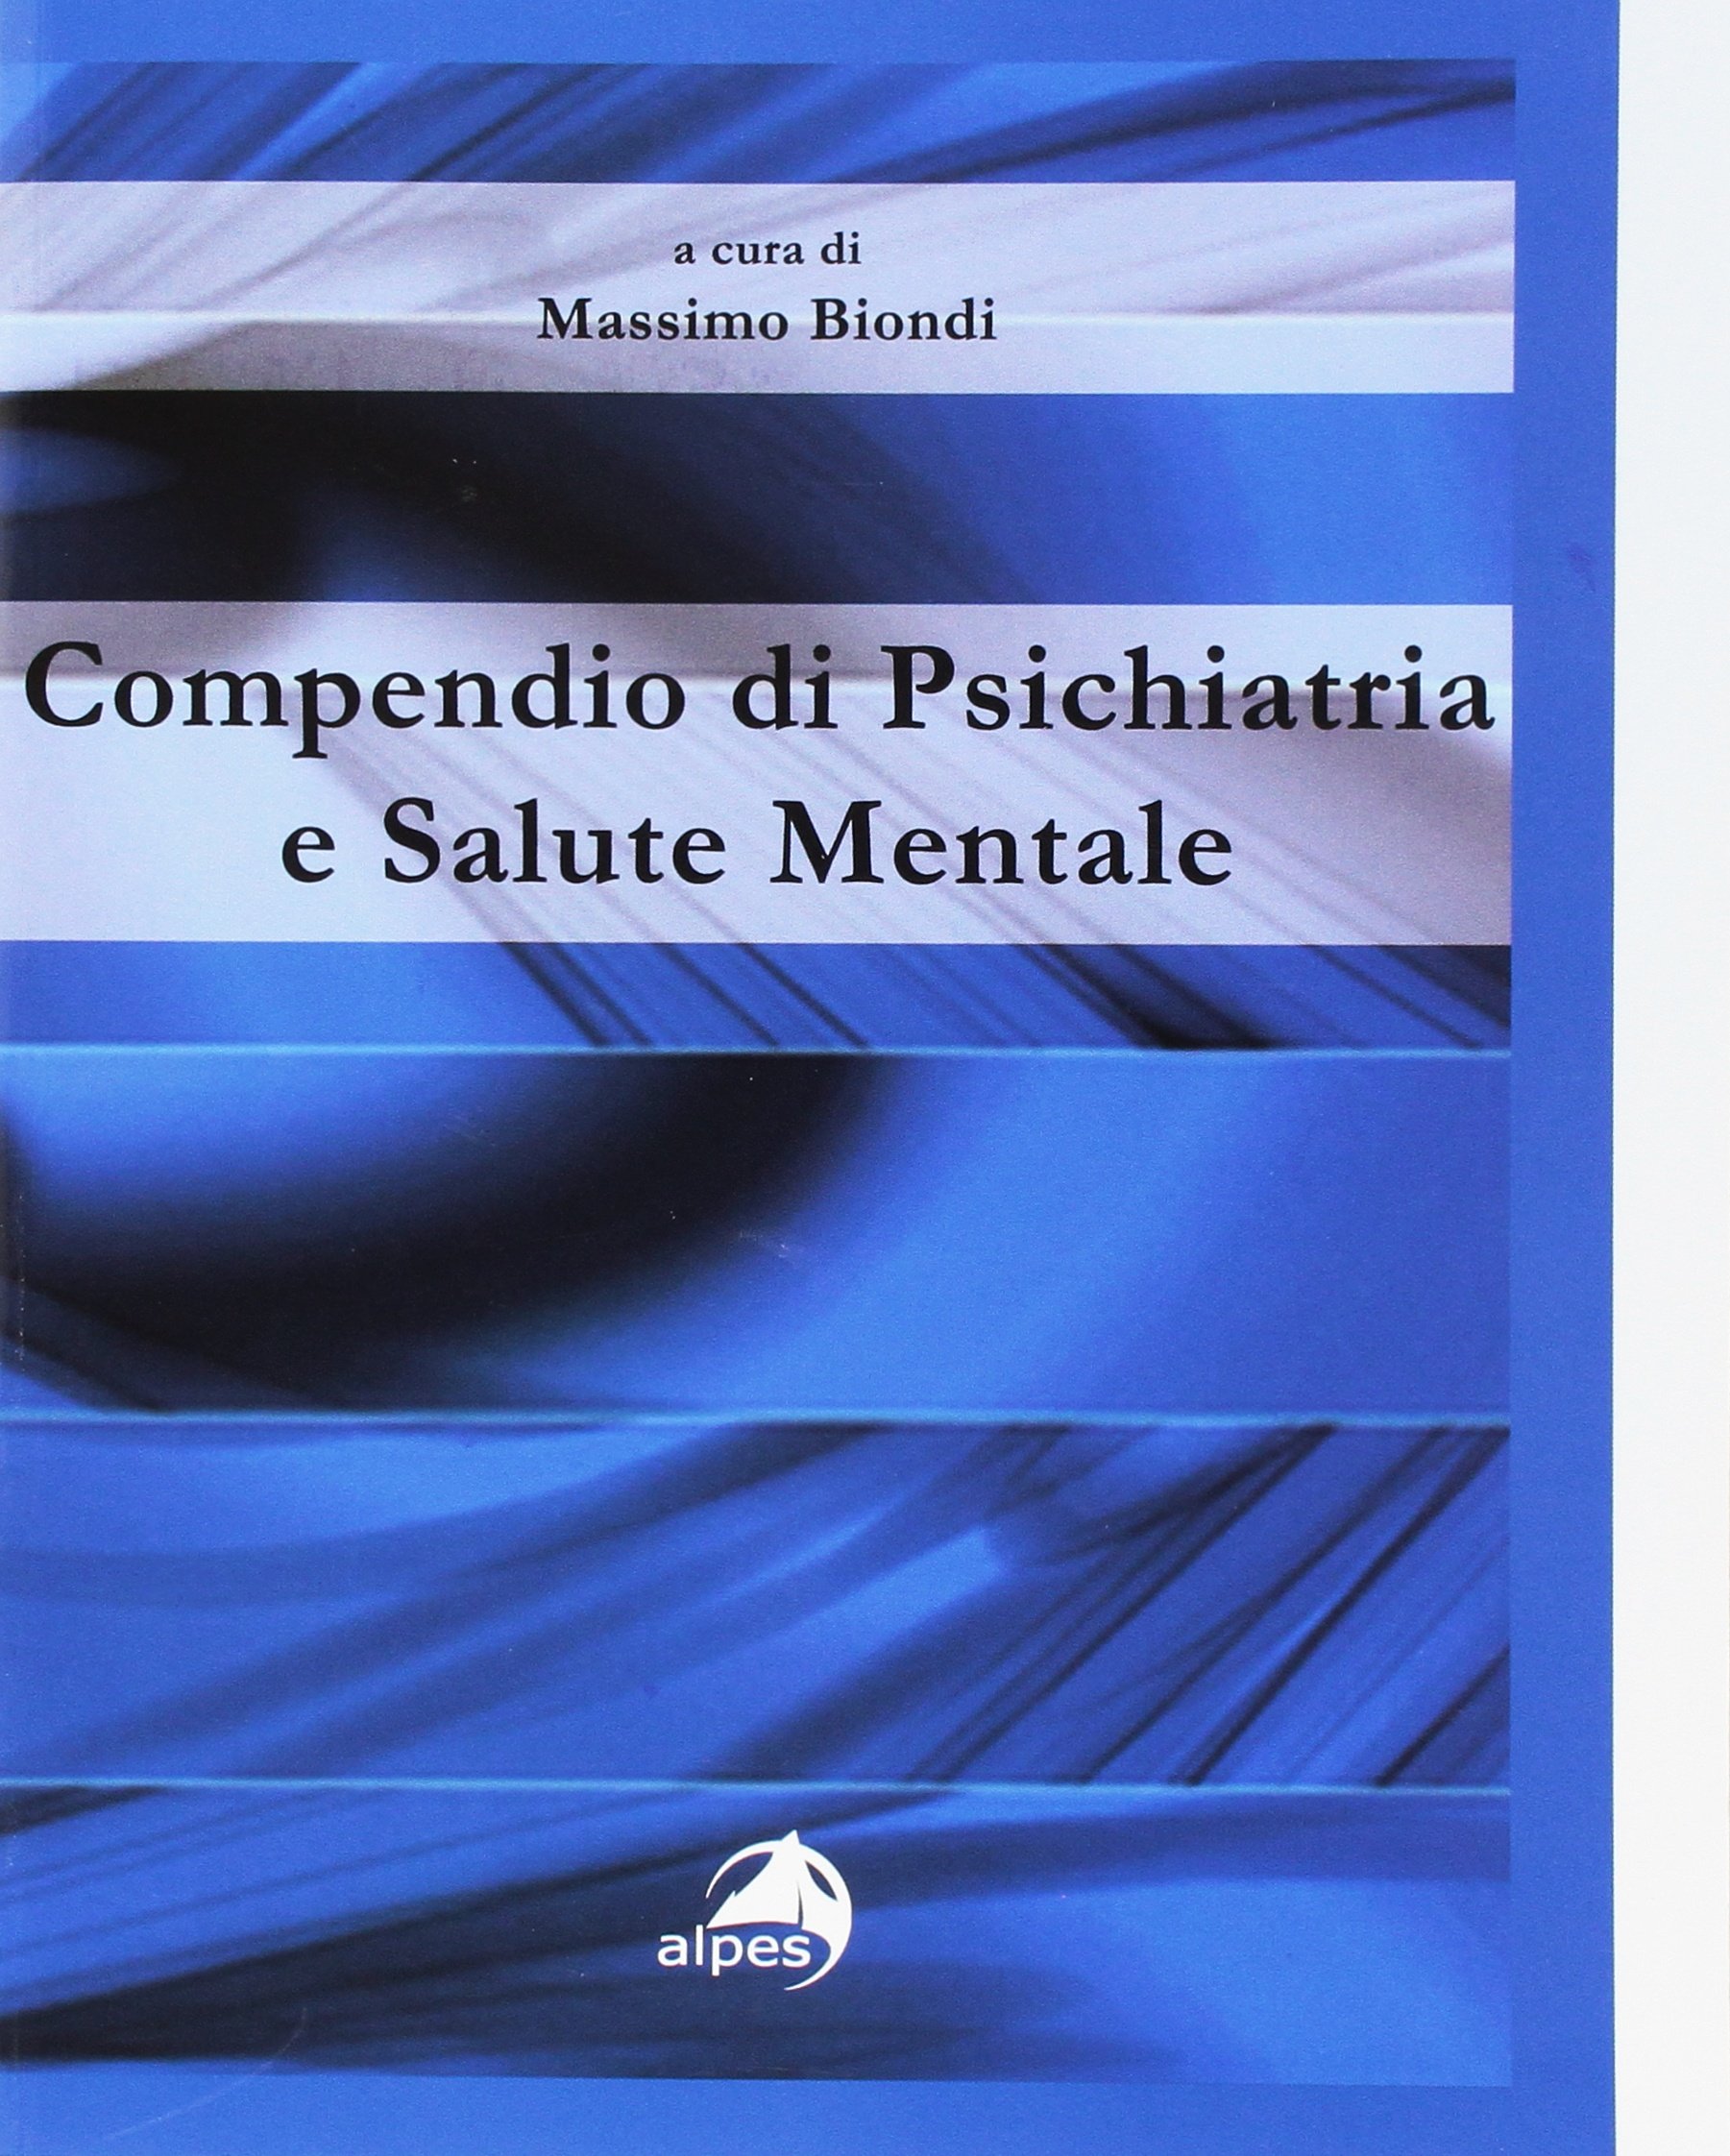 Compendio di psichiatria e salute mentale di Massimo Biondi